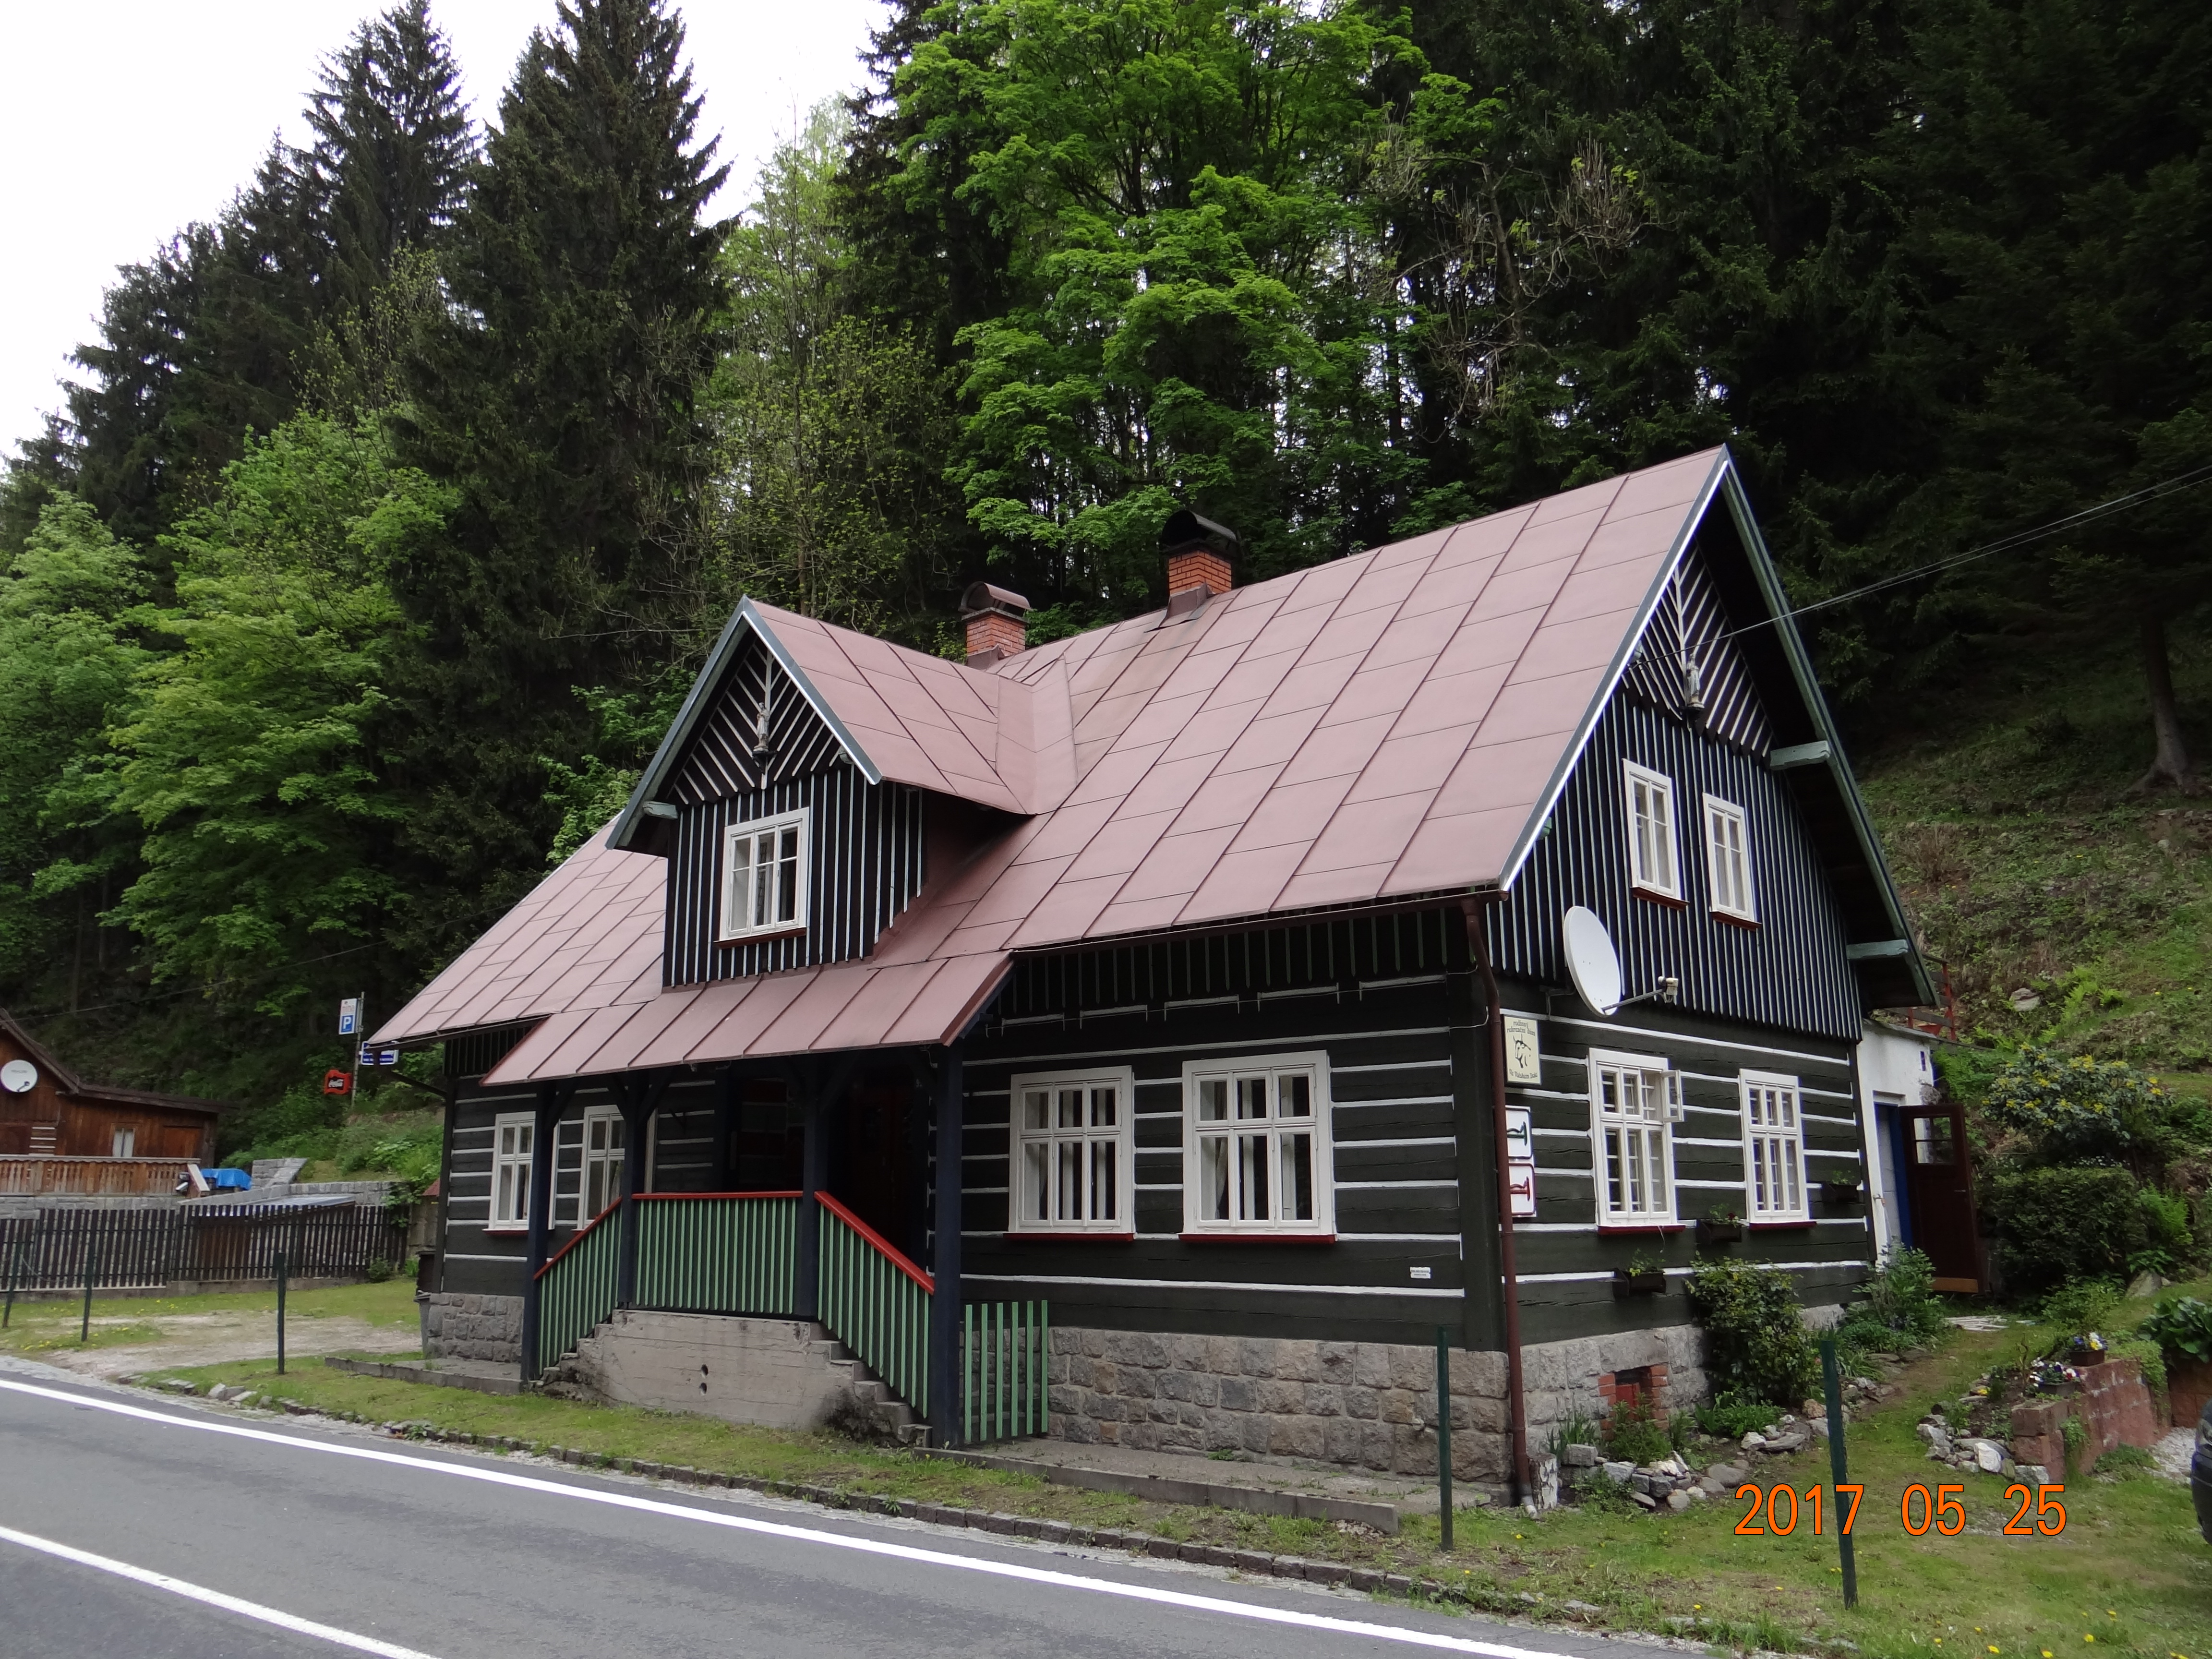 Groot vakantiehuis, pension of B&B, skigebied Spindleruv Mlyn, Tsjechie.